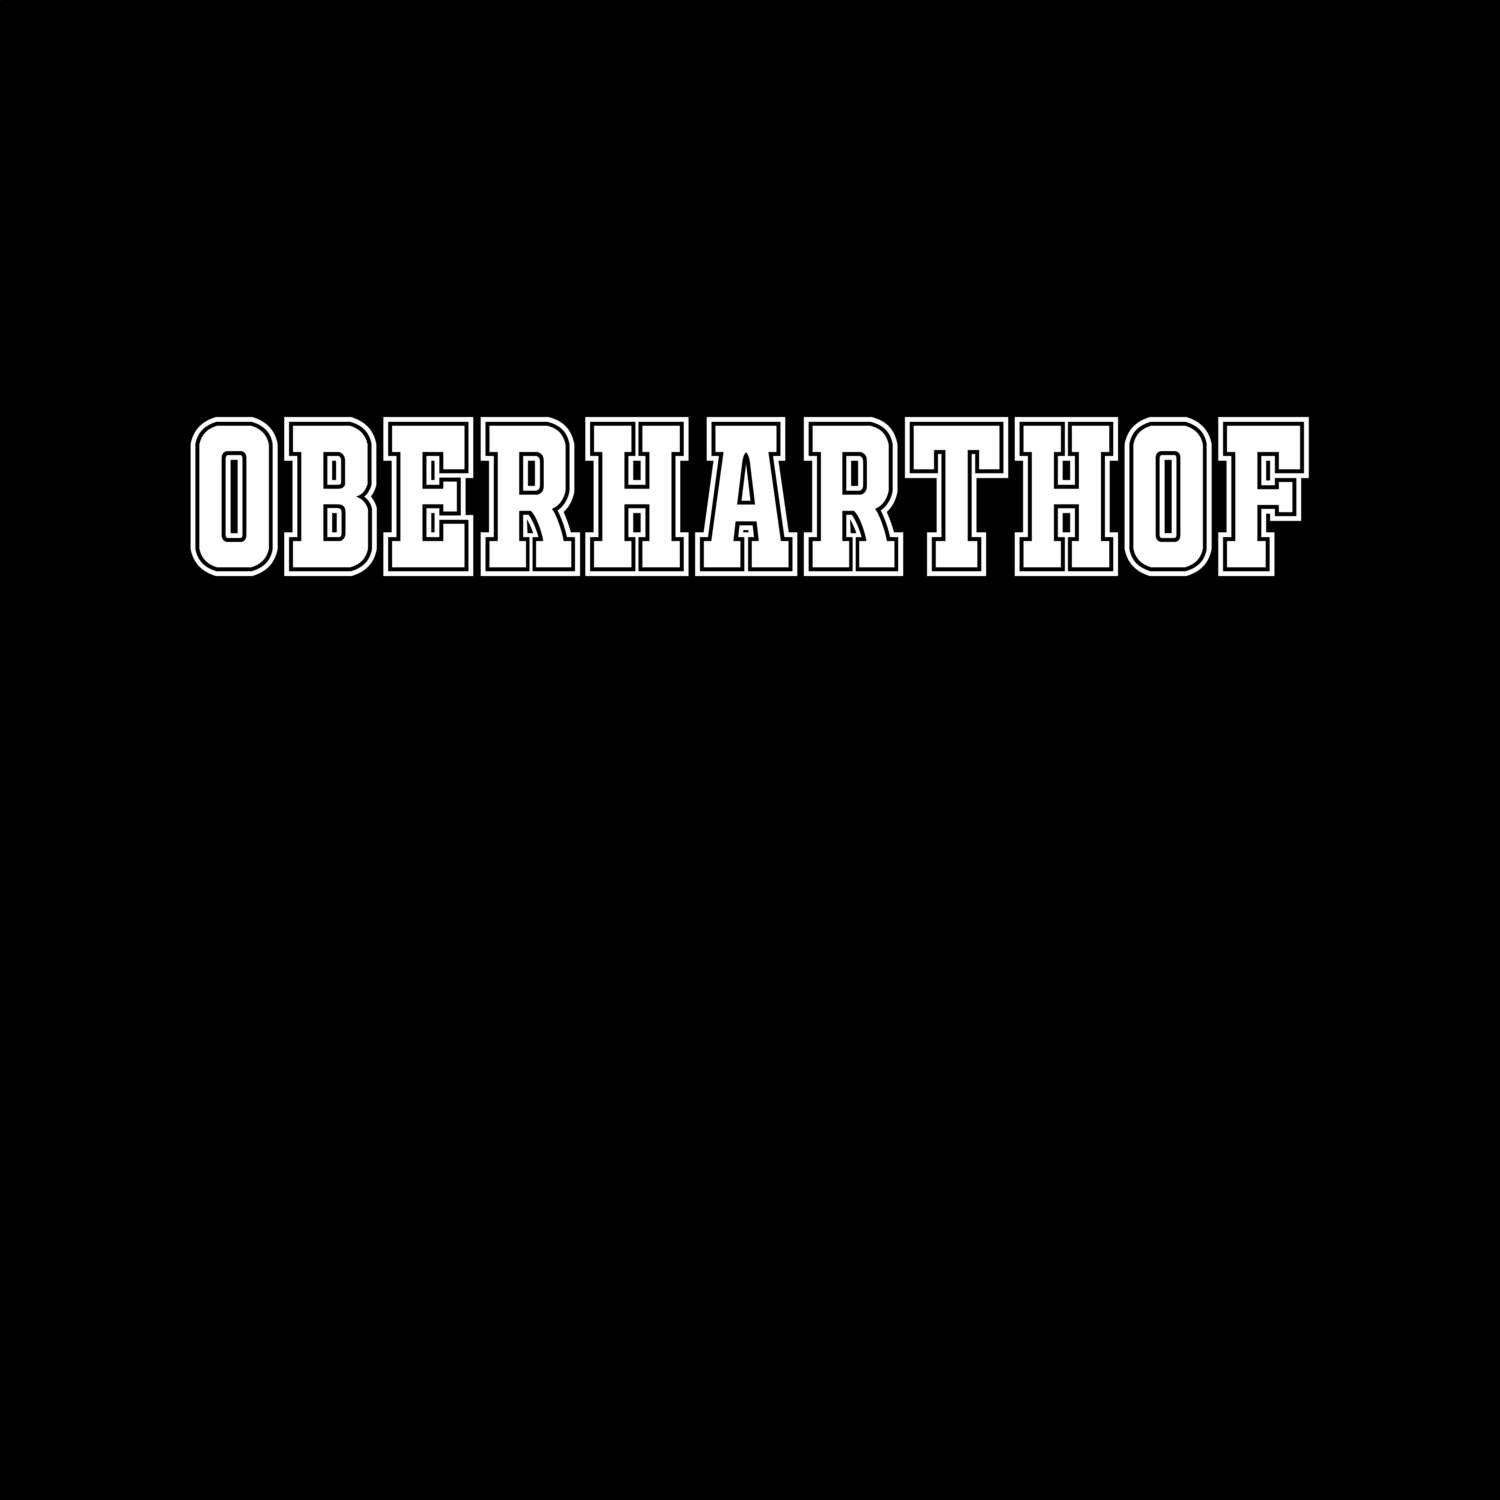 Oberharthof T-Shirt »Classic«